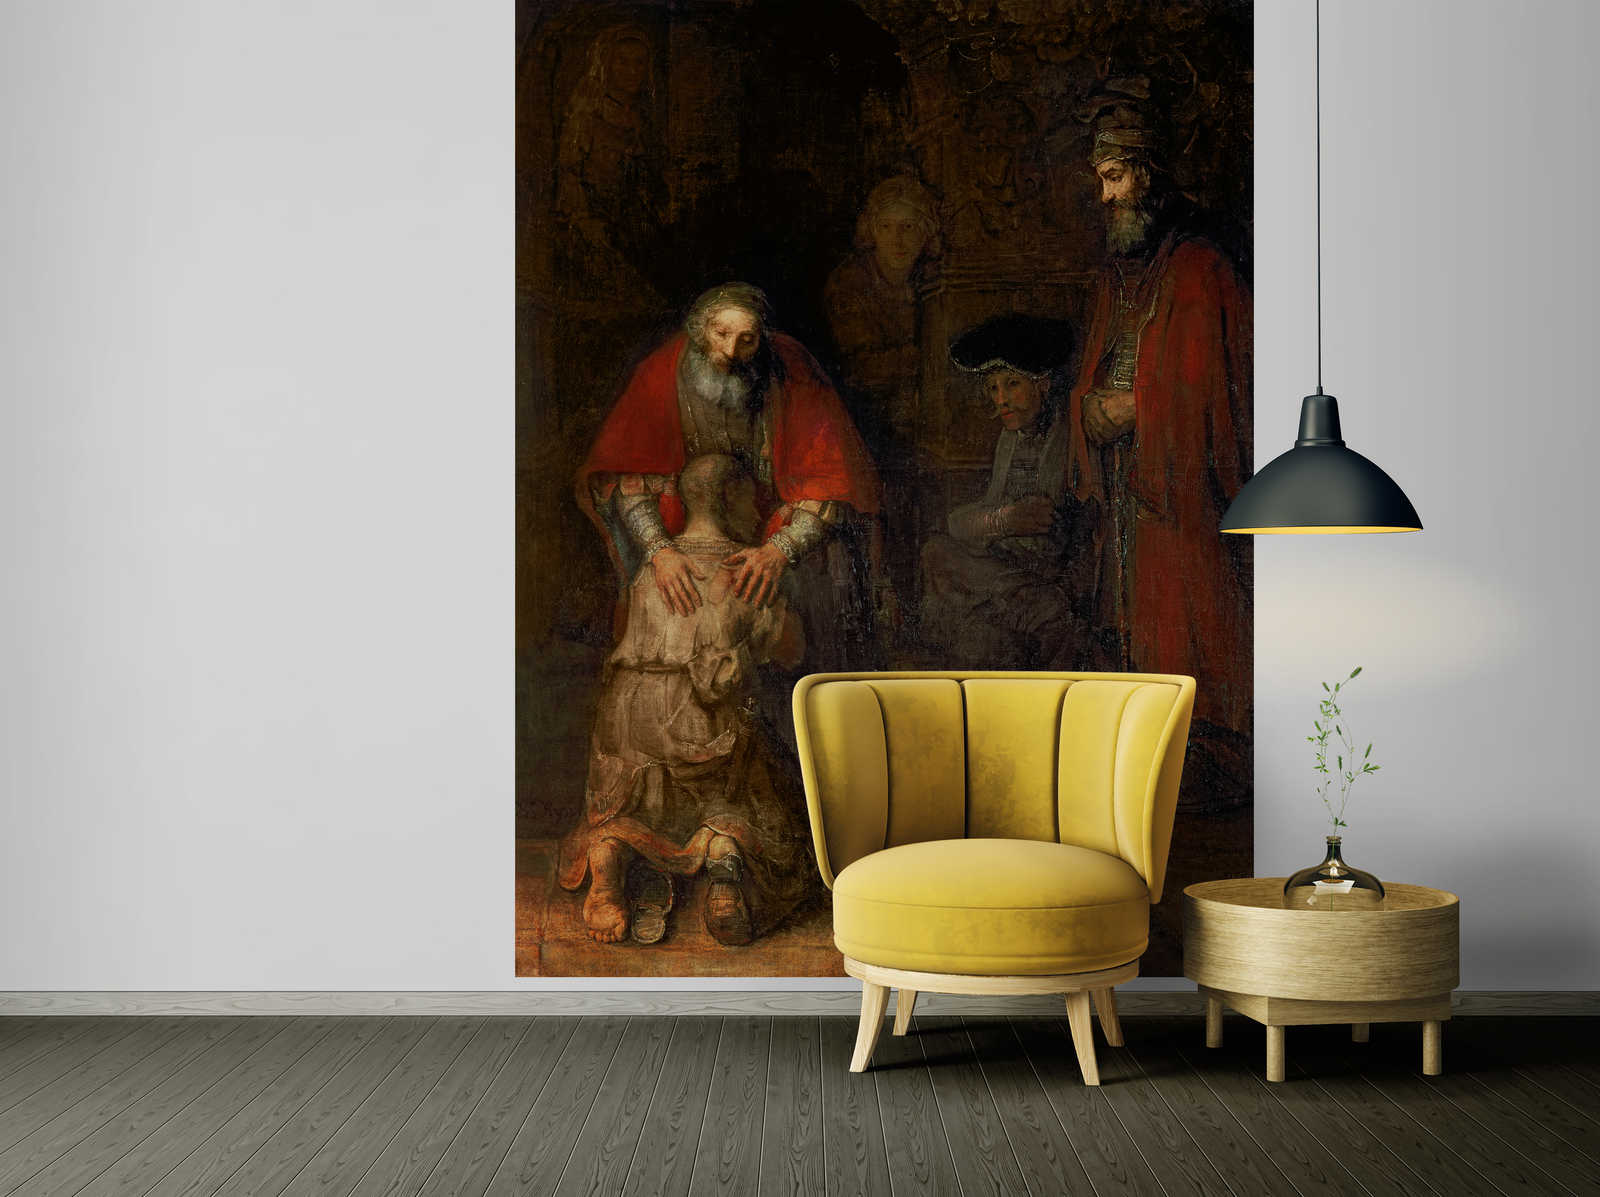             Papier peint panoramique "Le retour du fils prodigue" de Rembrandt van Rijn
        